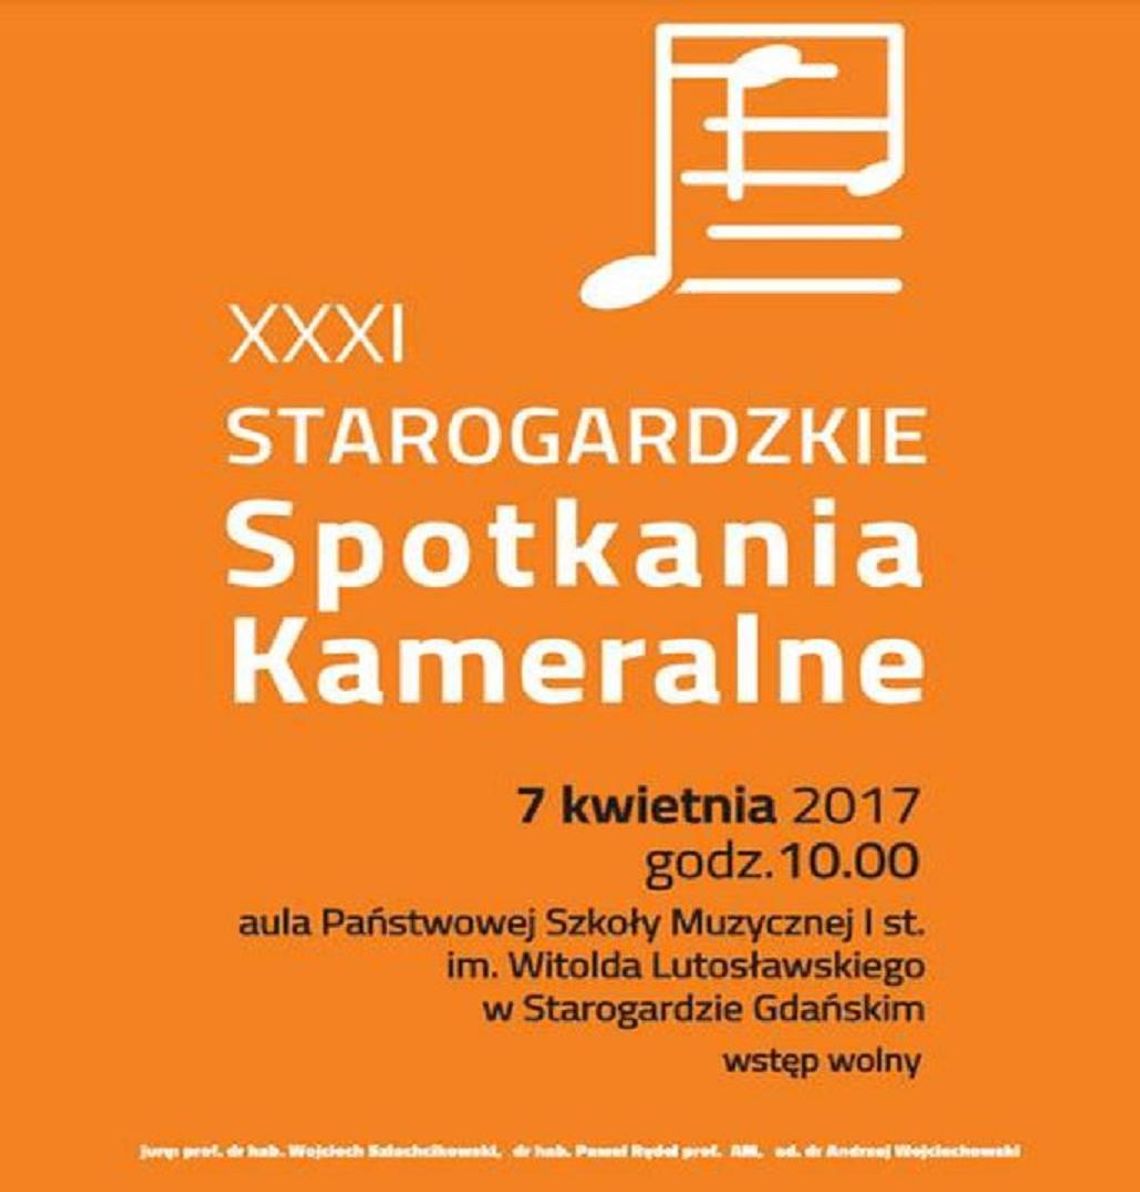 XXXI Starogardzkie Spotkania Kameralne w Państwowej Szkole Muzycznej w Starogardzie Gdańskim 